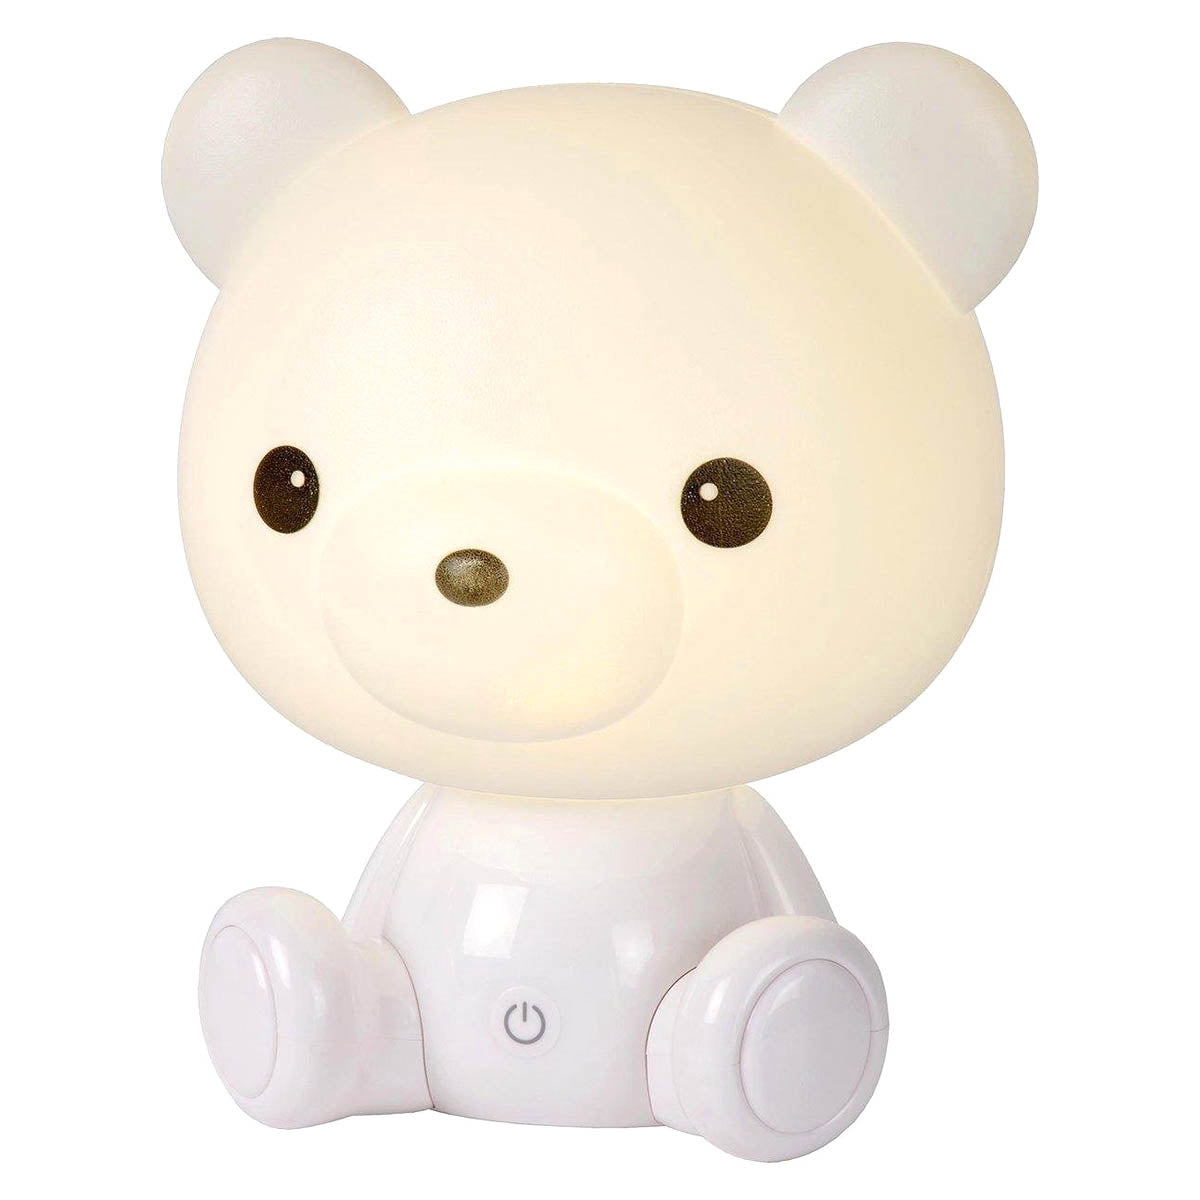 Ariko XL Bär Tischlampe Kinderzimmer Babyzimmer - Nachtlicht - LED dimmbar - 3 Stufen dimmbar - Weiß - Teddybär